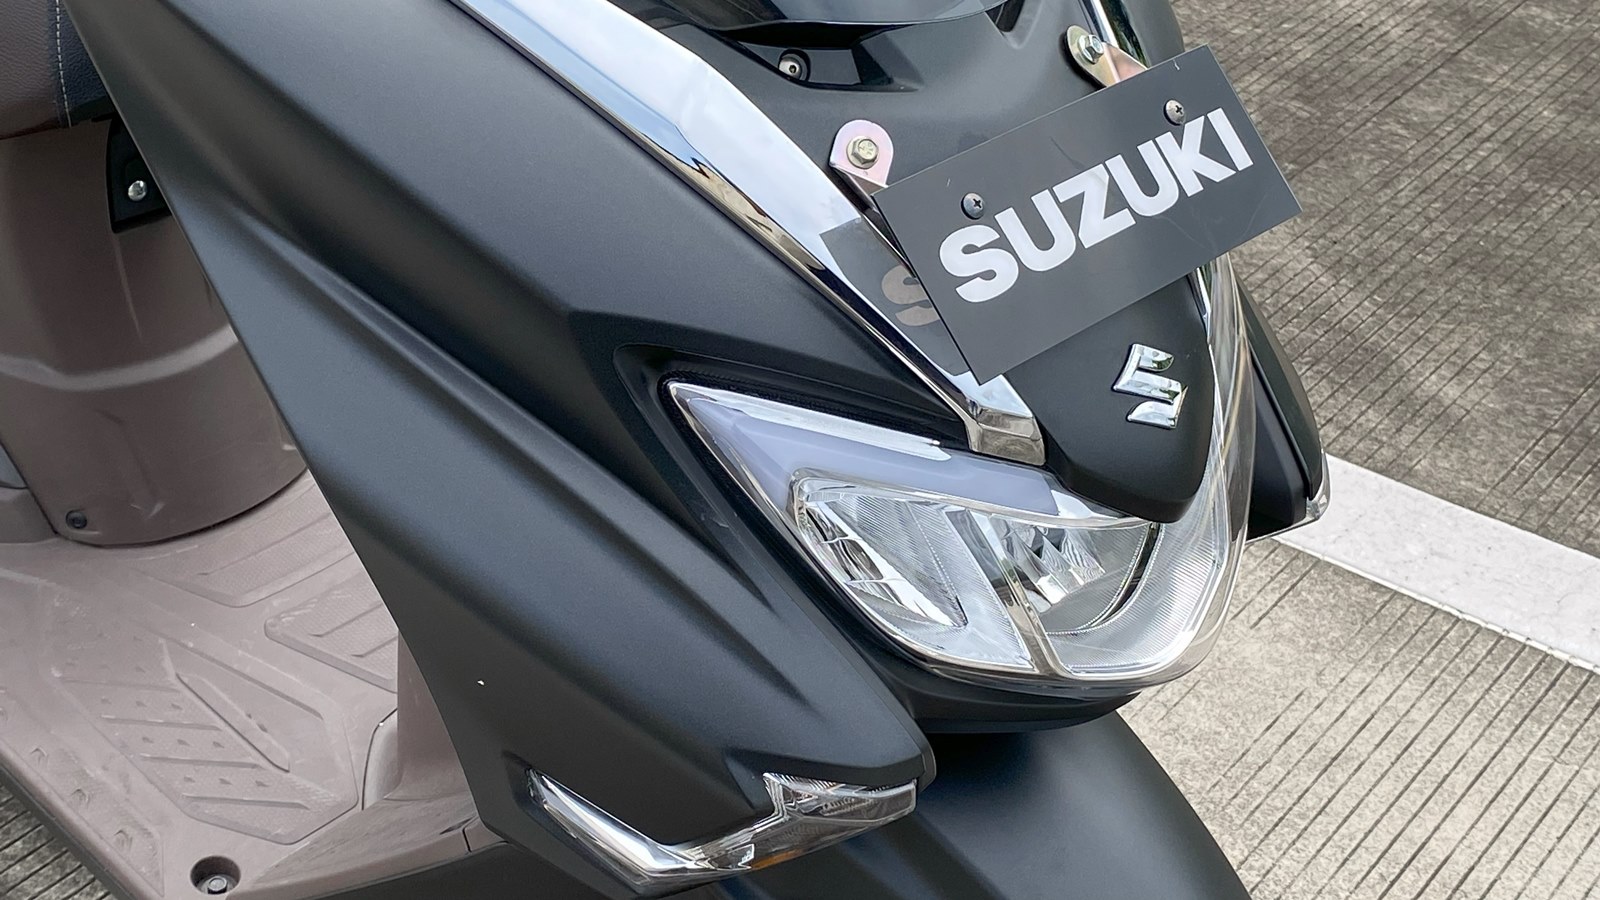 Suzuki Burgman 125 face